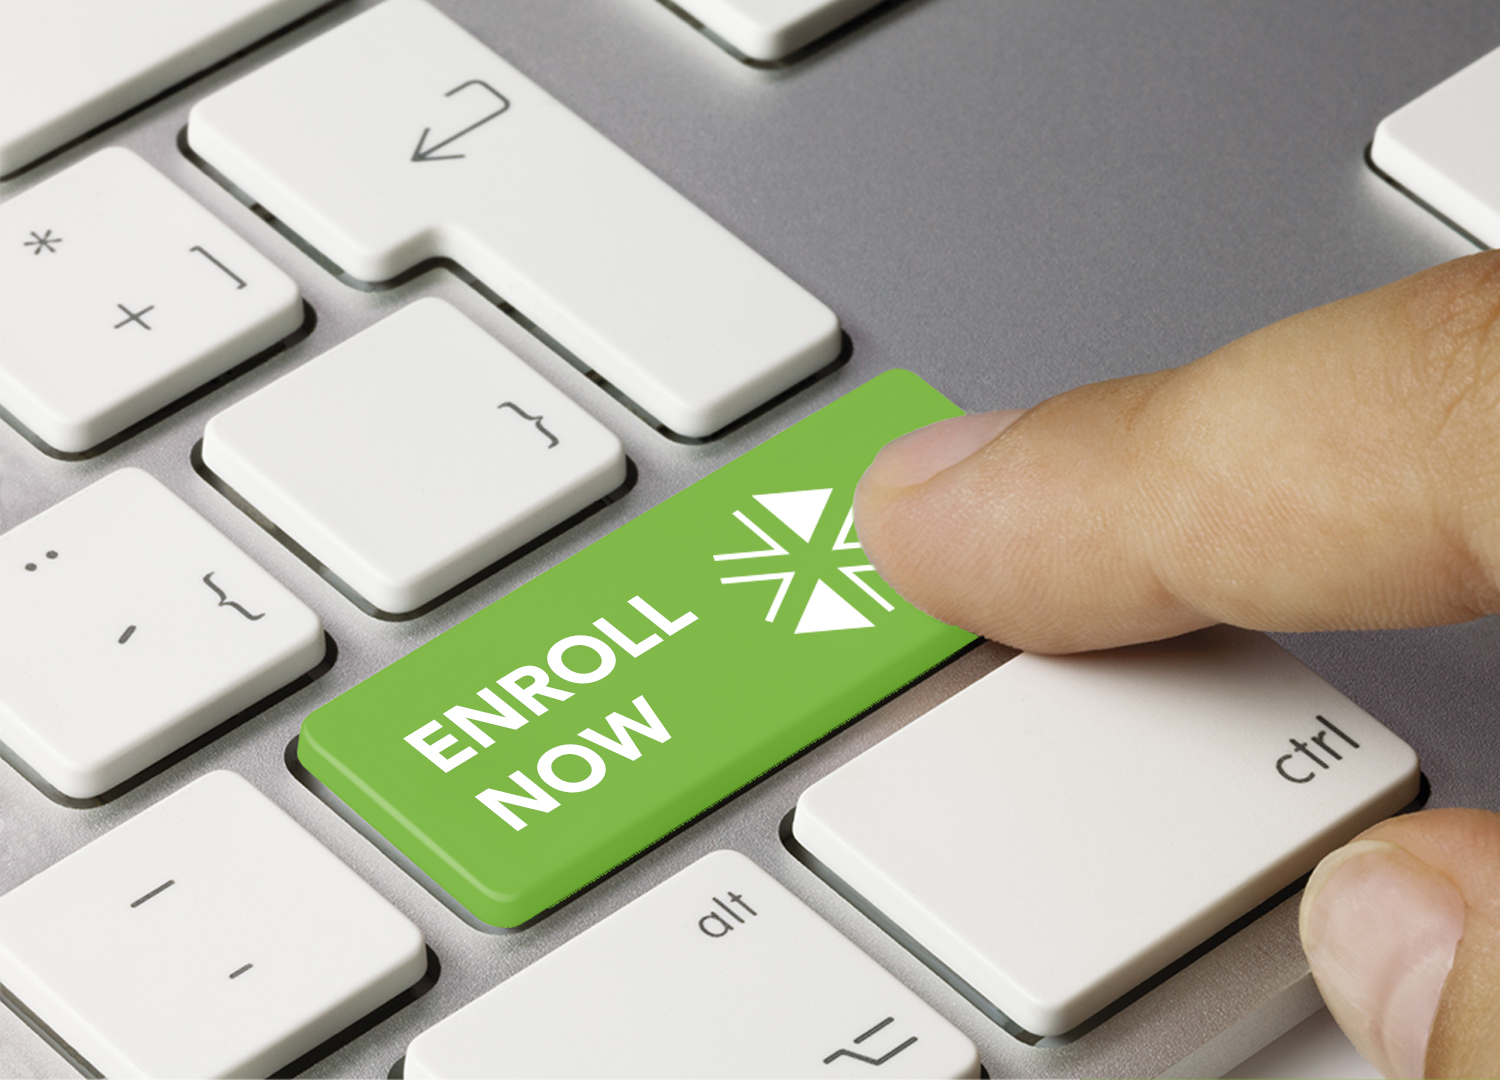 Acercamiento a un dedo oprimiendo una tecla en un teclado. La tecla es verde y dice "Enroll Now" (Inscribirse ahora).